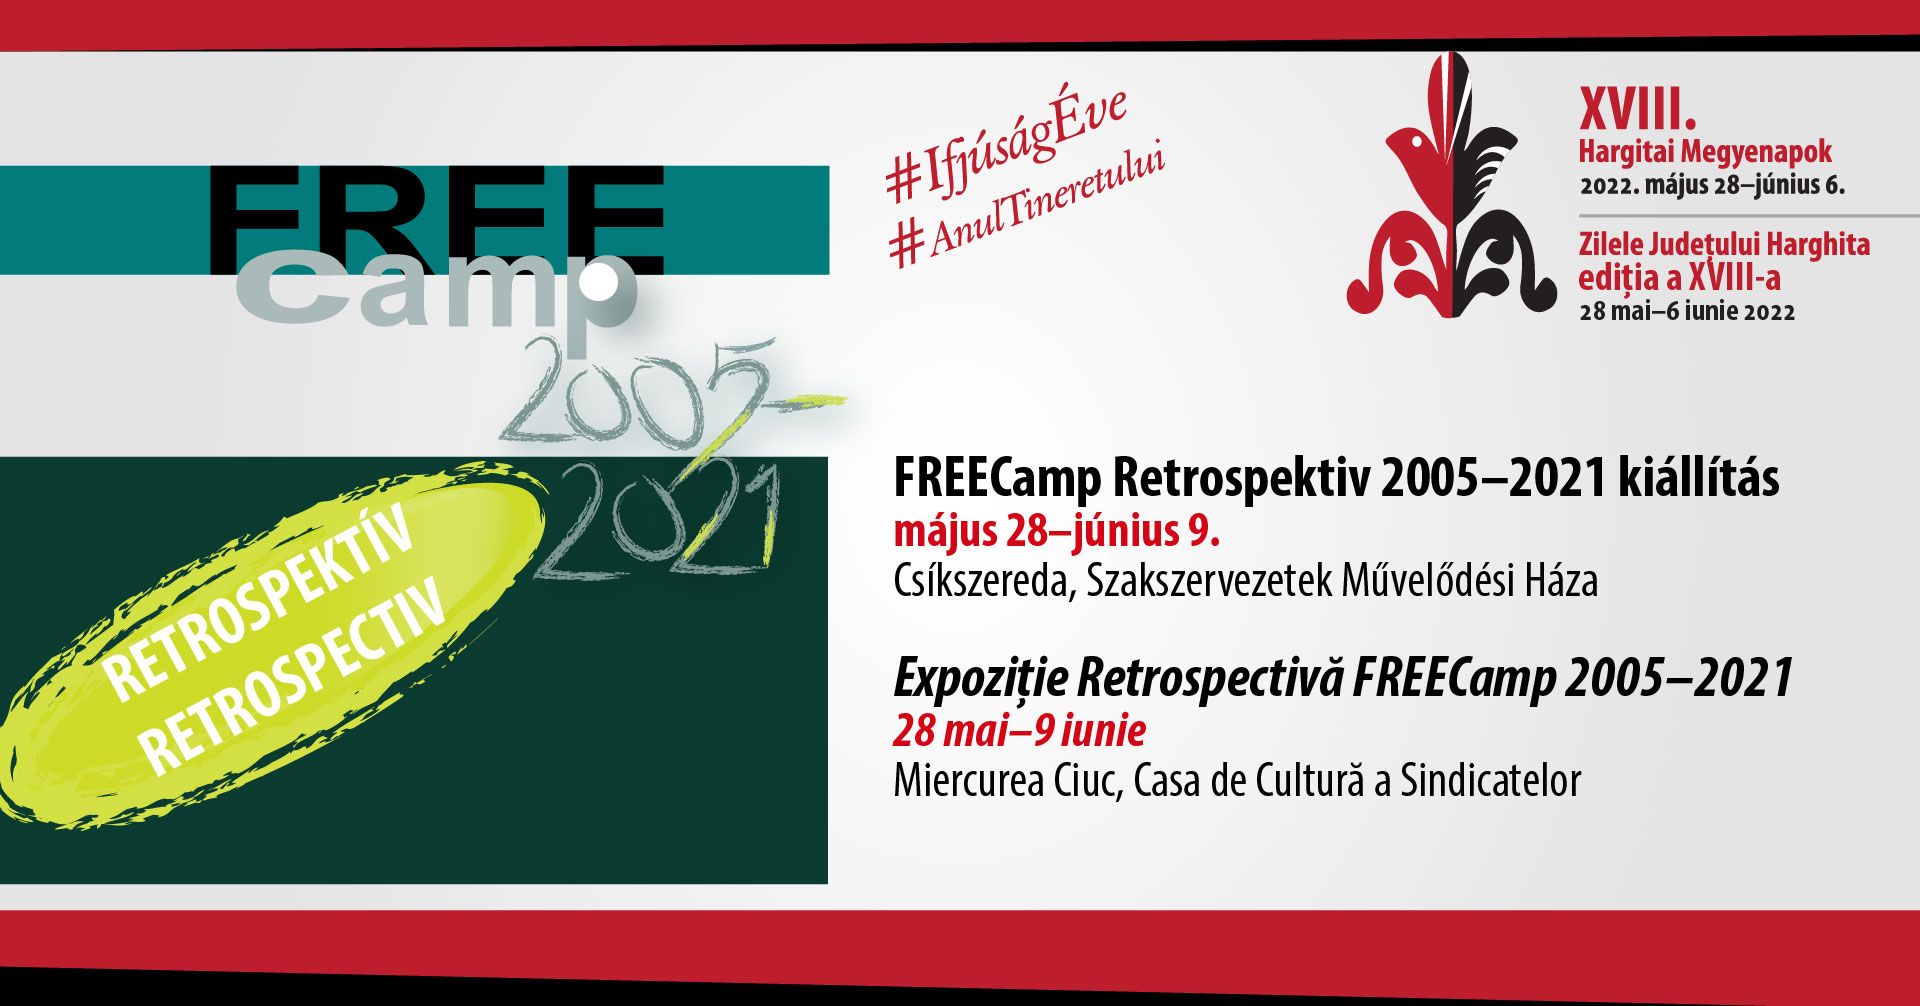 Expoziție Retrospectivă 2005-2021 Free Camp